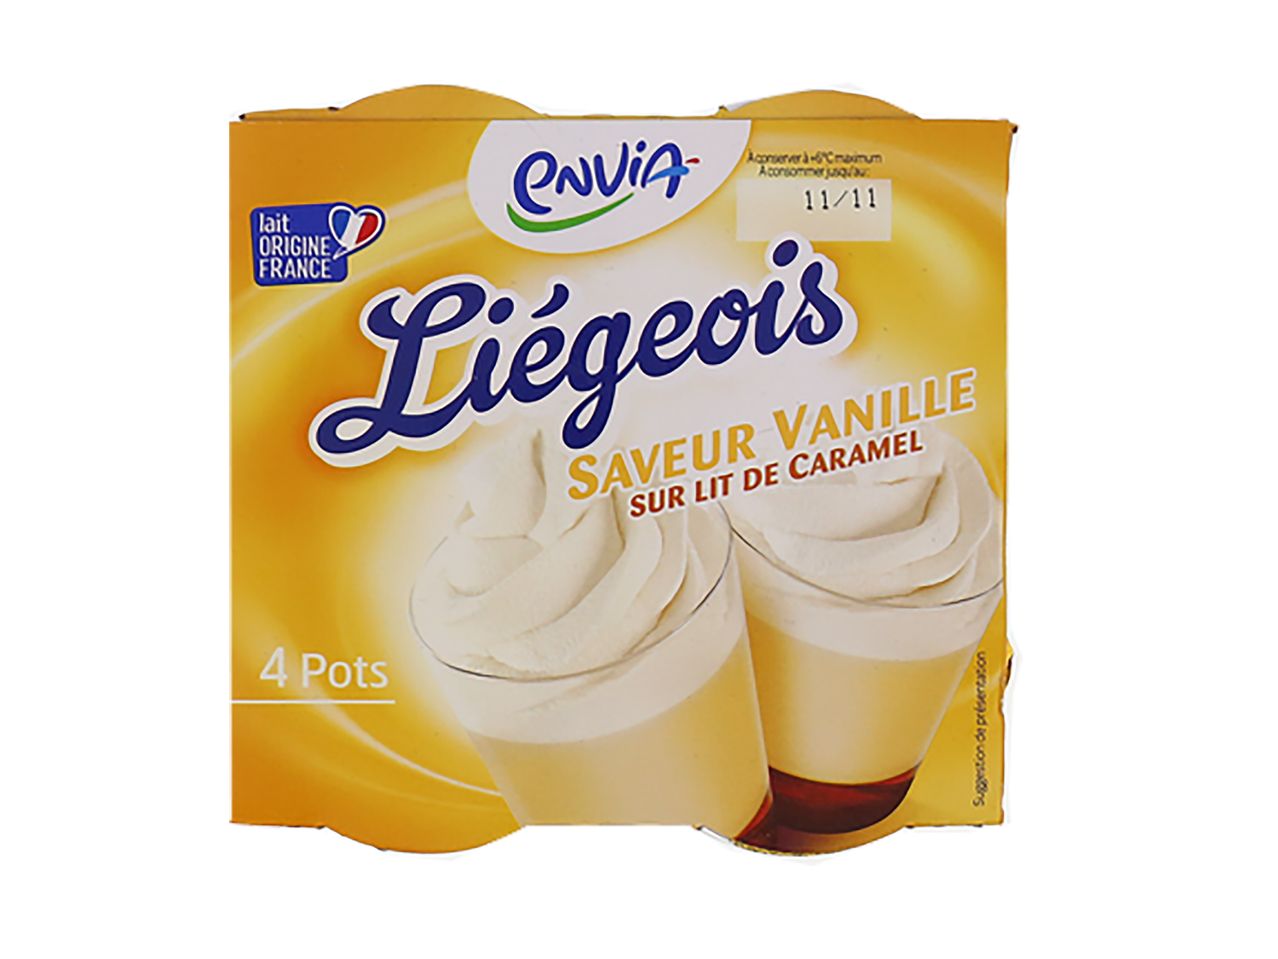 Aller en mode plein écran : Liégeois saveur vanille sur lit de caramel - Image 1